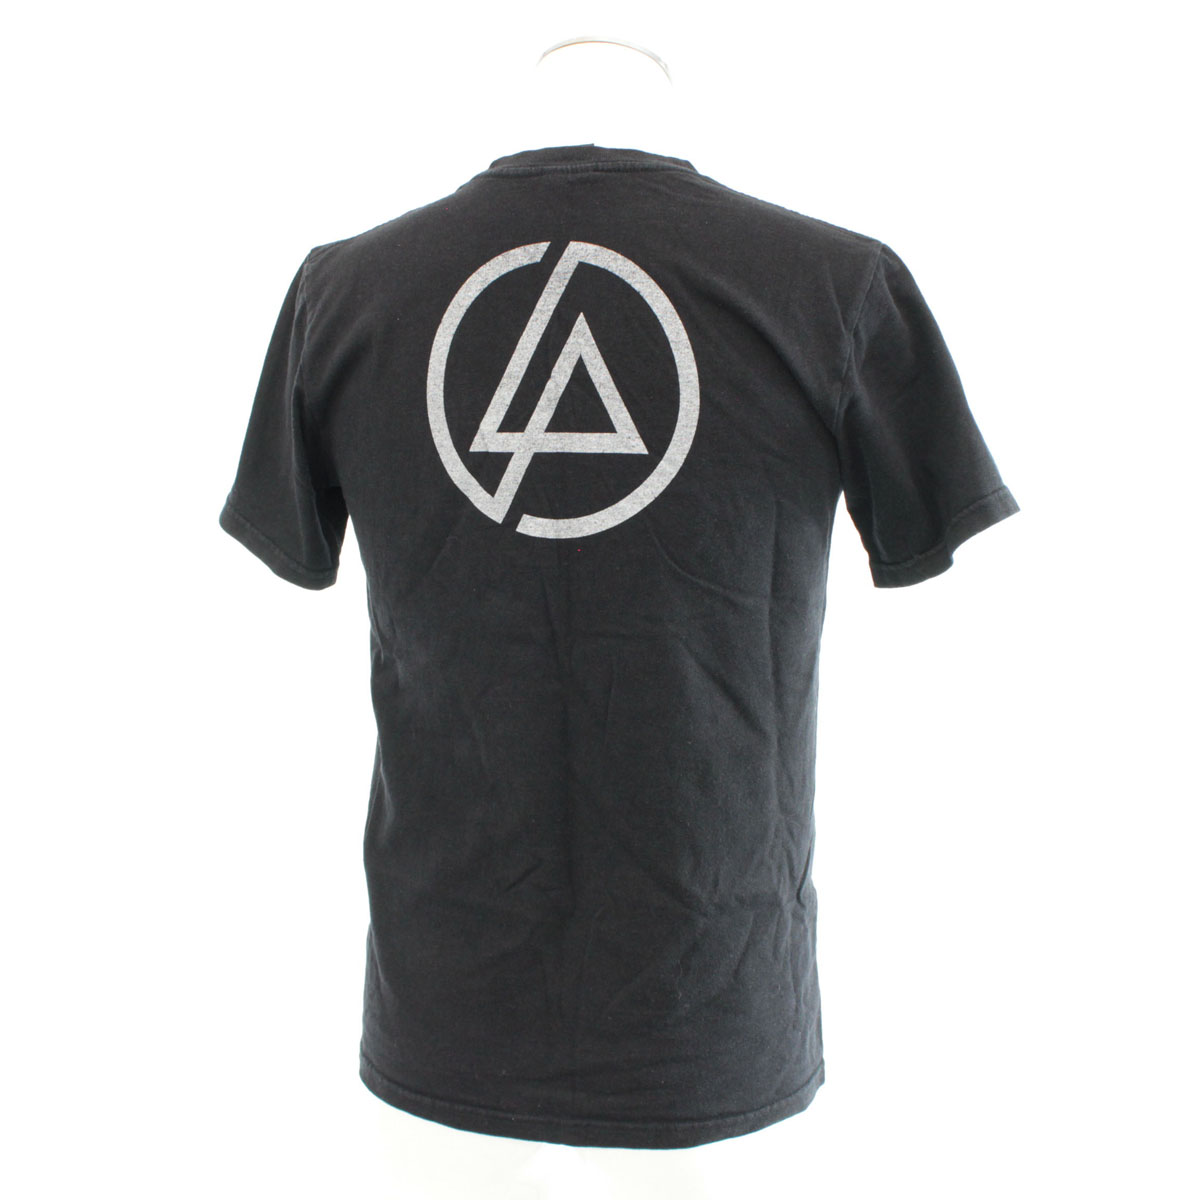 楽天市場 Linkin Park リンキンパーク 半袖tシャツ Mサイズ Black 黒 ブラック バンドtシャツ ロゴブリント クルーネック メンズ トップス 中古 リサイクル ティファナ